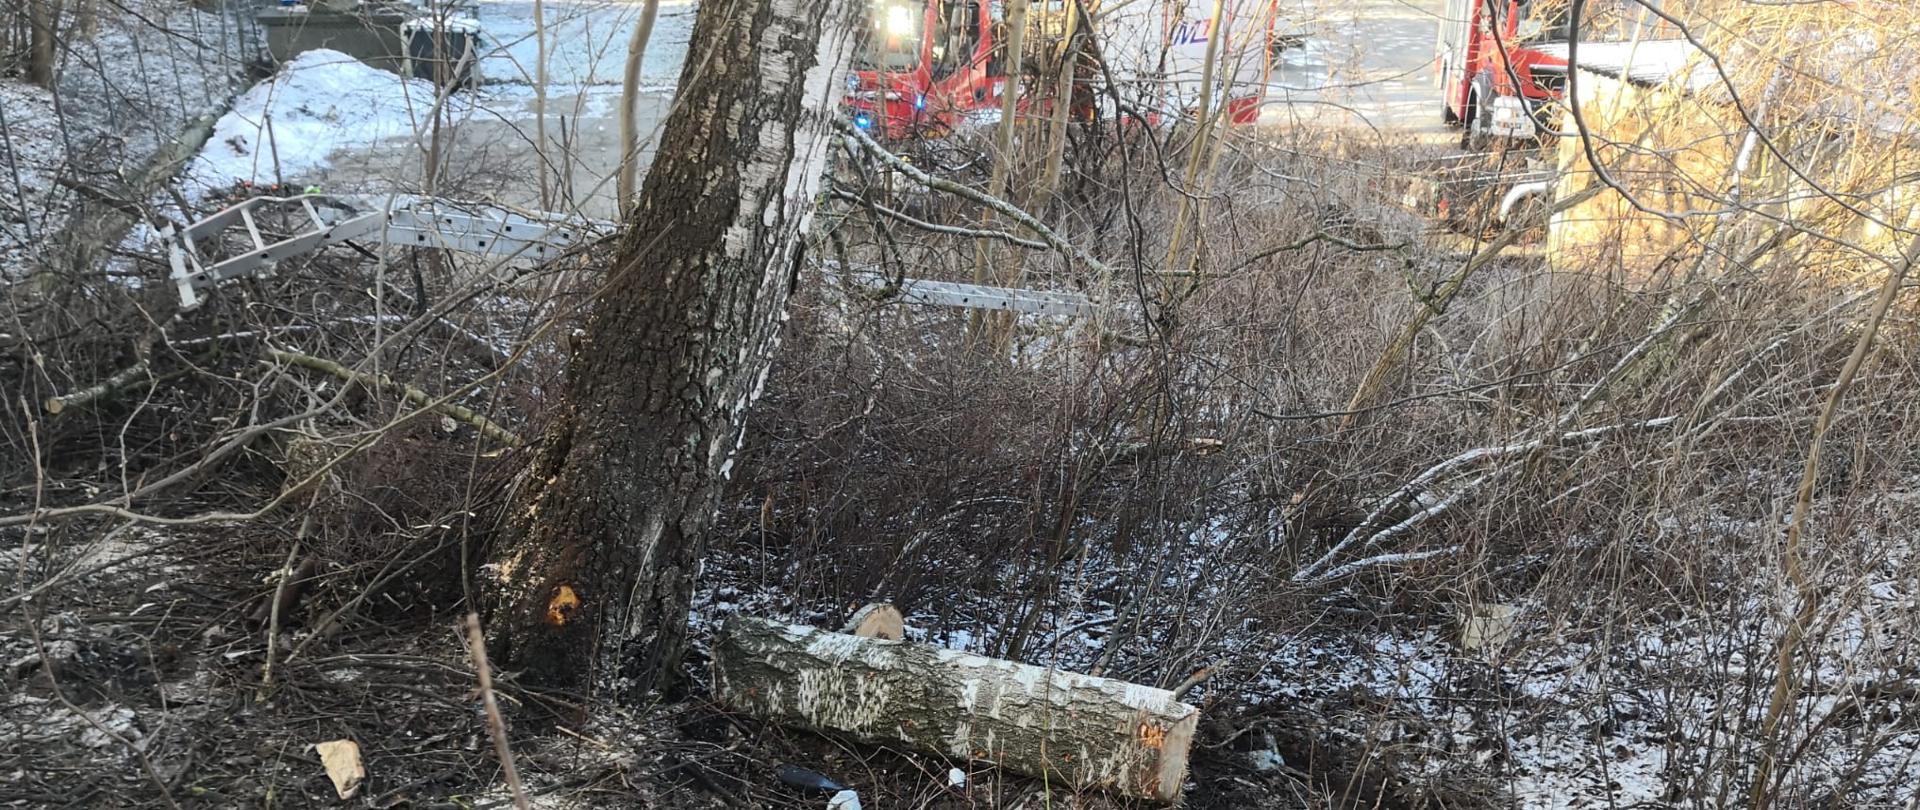 Zdjęcie przedstawia ścięte drzewo, które przygniotło młodego mężczyznę podczas prac przy ścince.